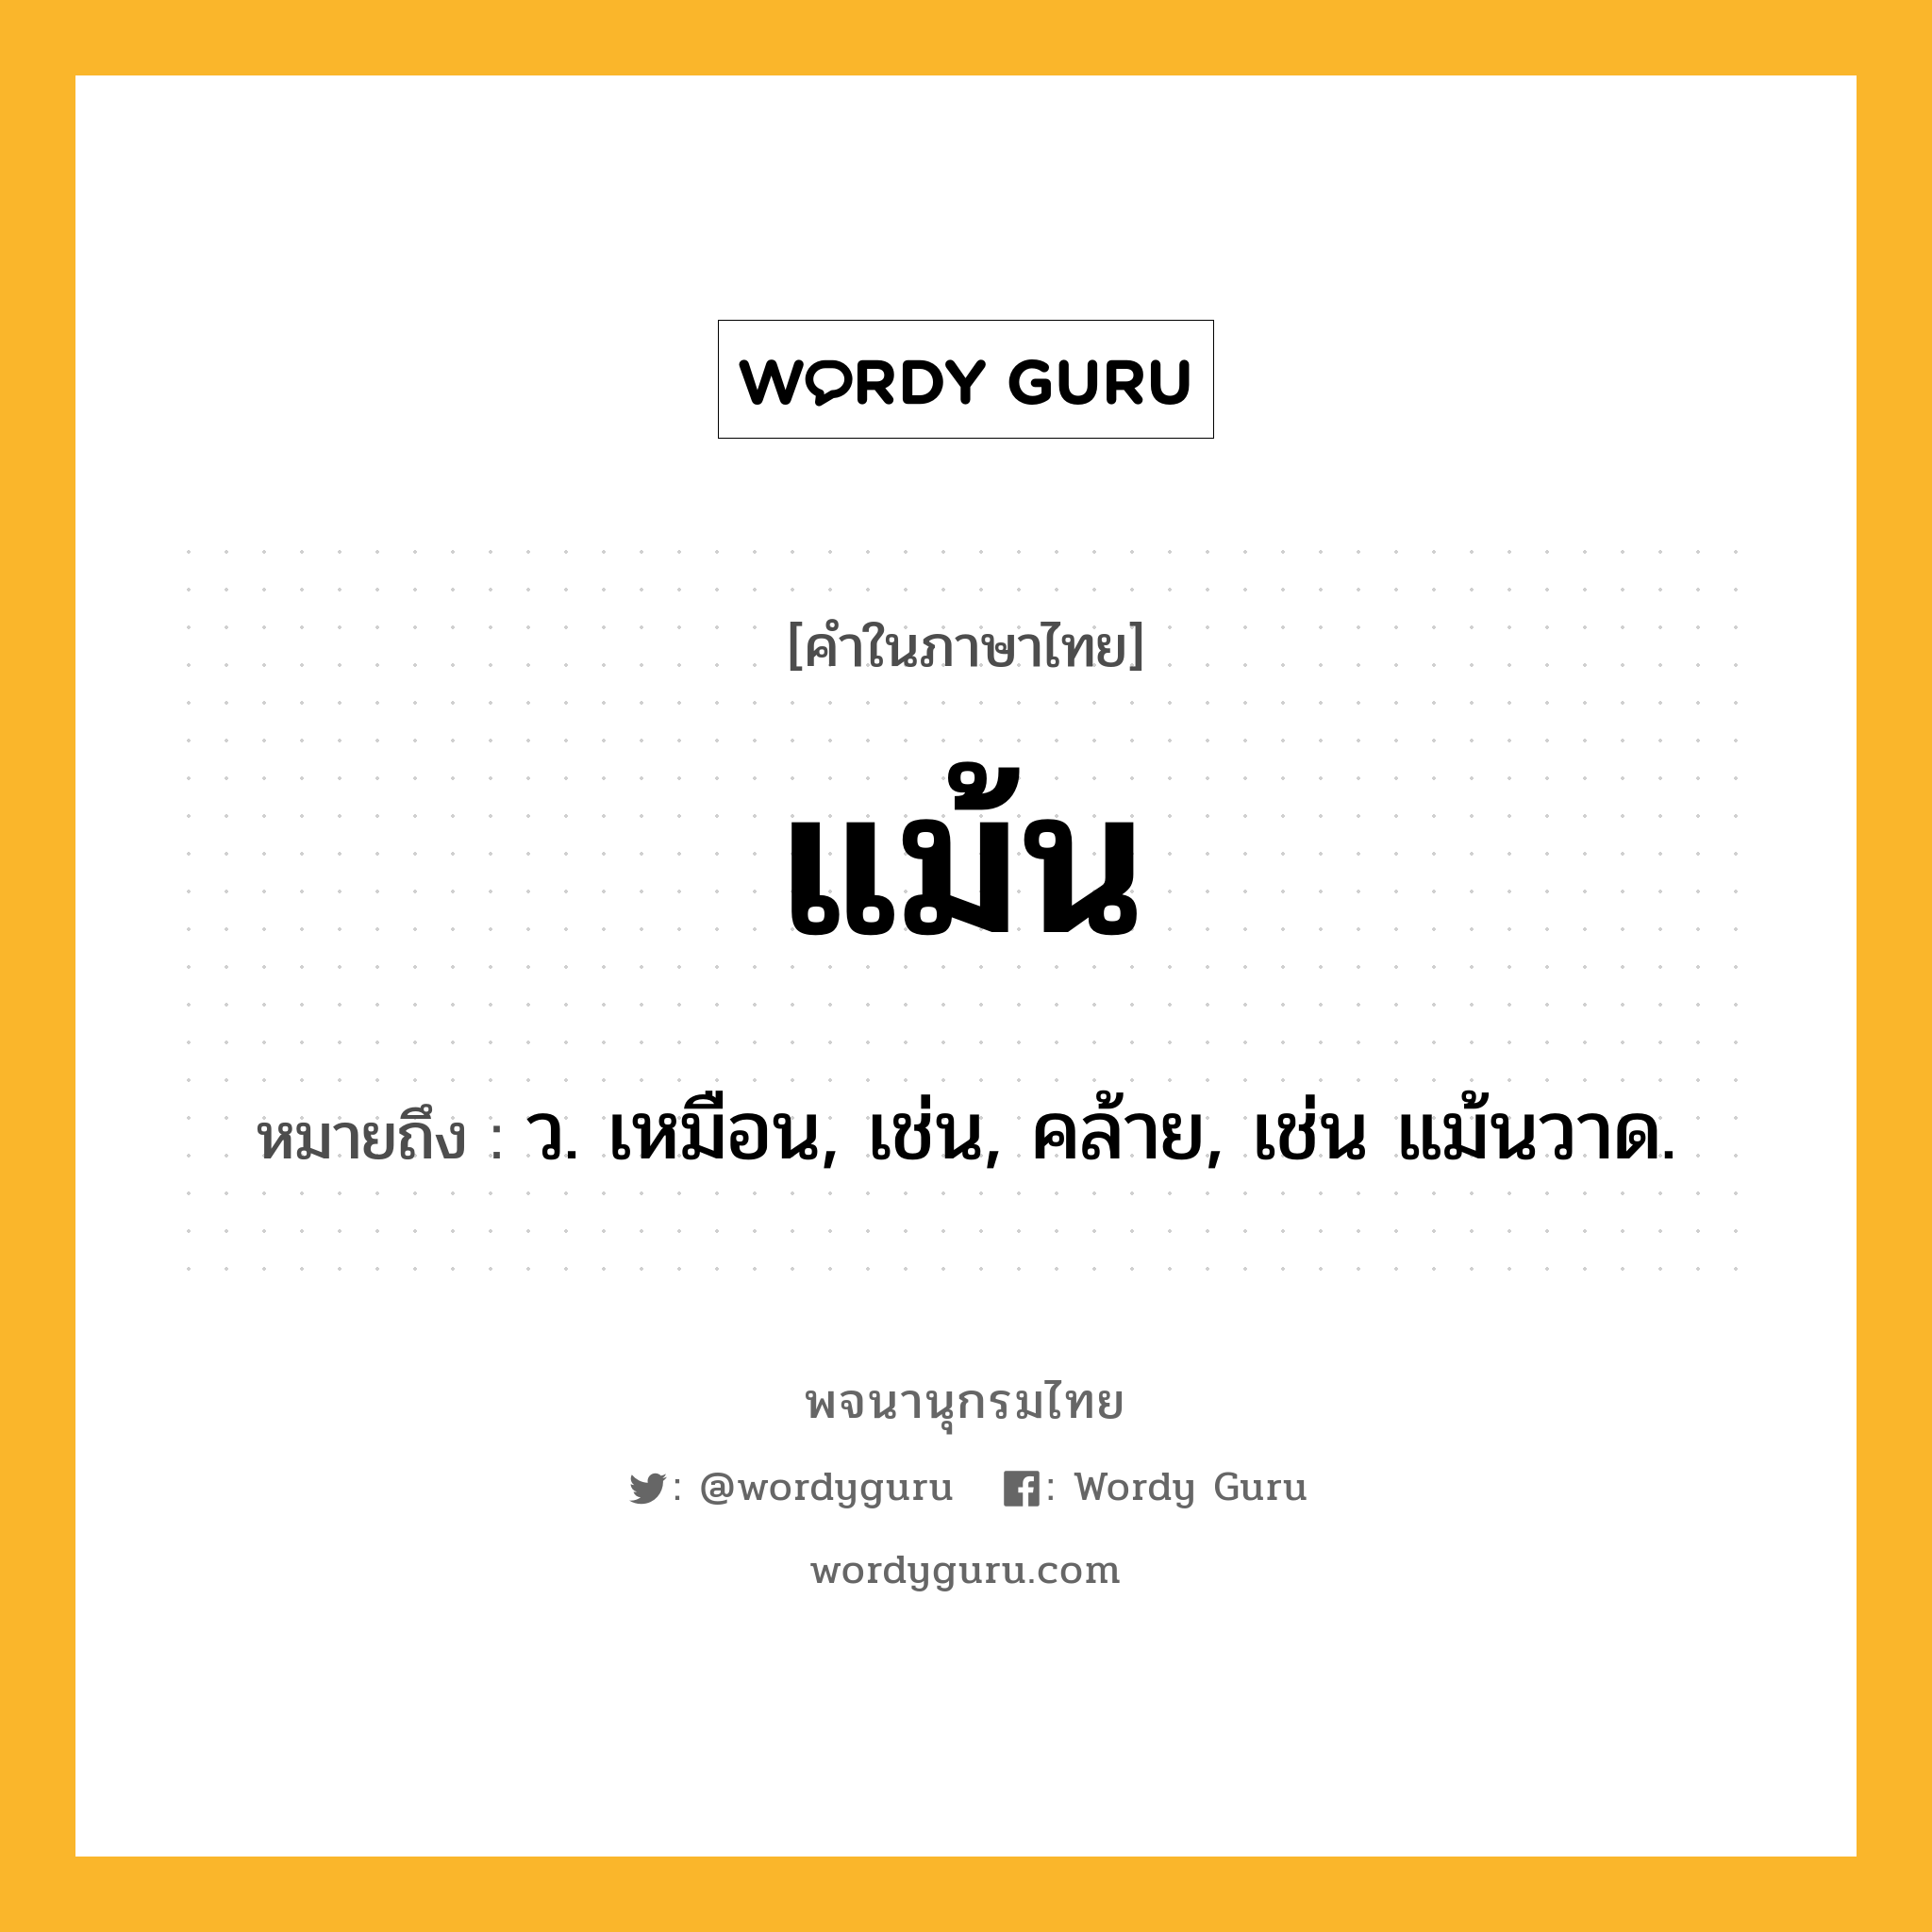 แม้น หมายถึงอะไร?, คำในภาษาไทย แม้น หมายถึง ว. เหมือน, เช่น, คล้าย, เช่น แม้นวาด.